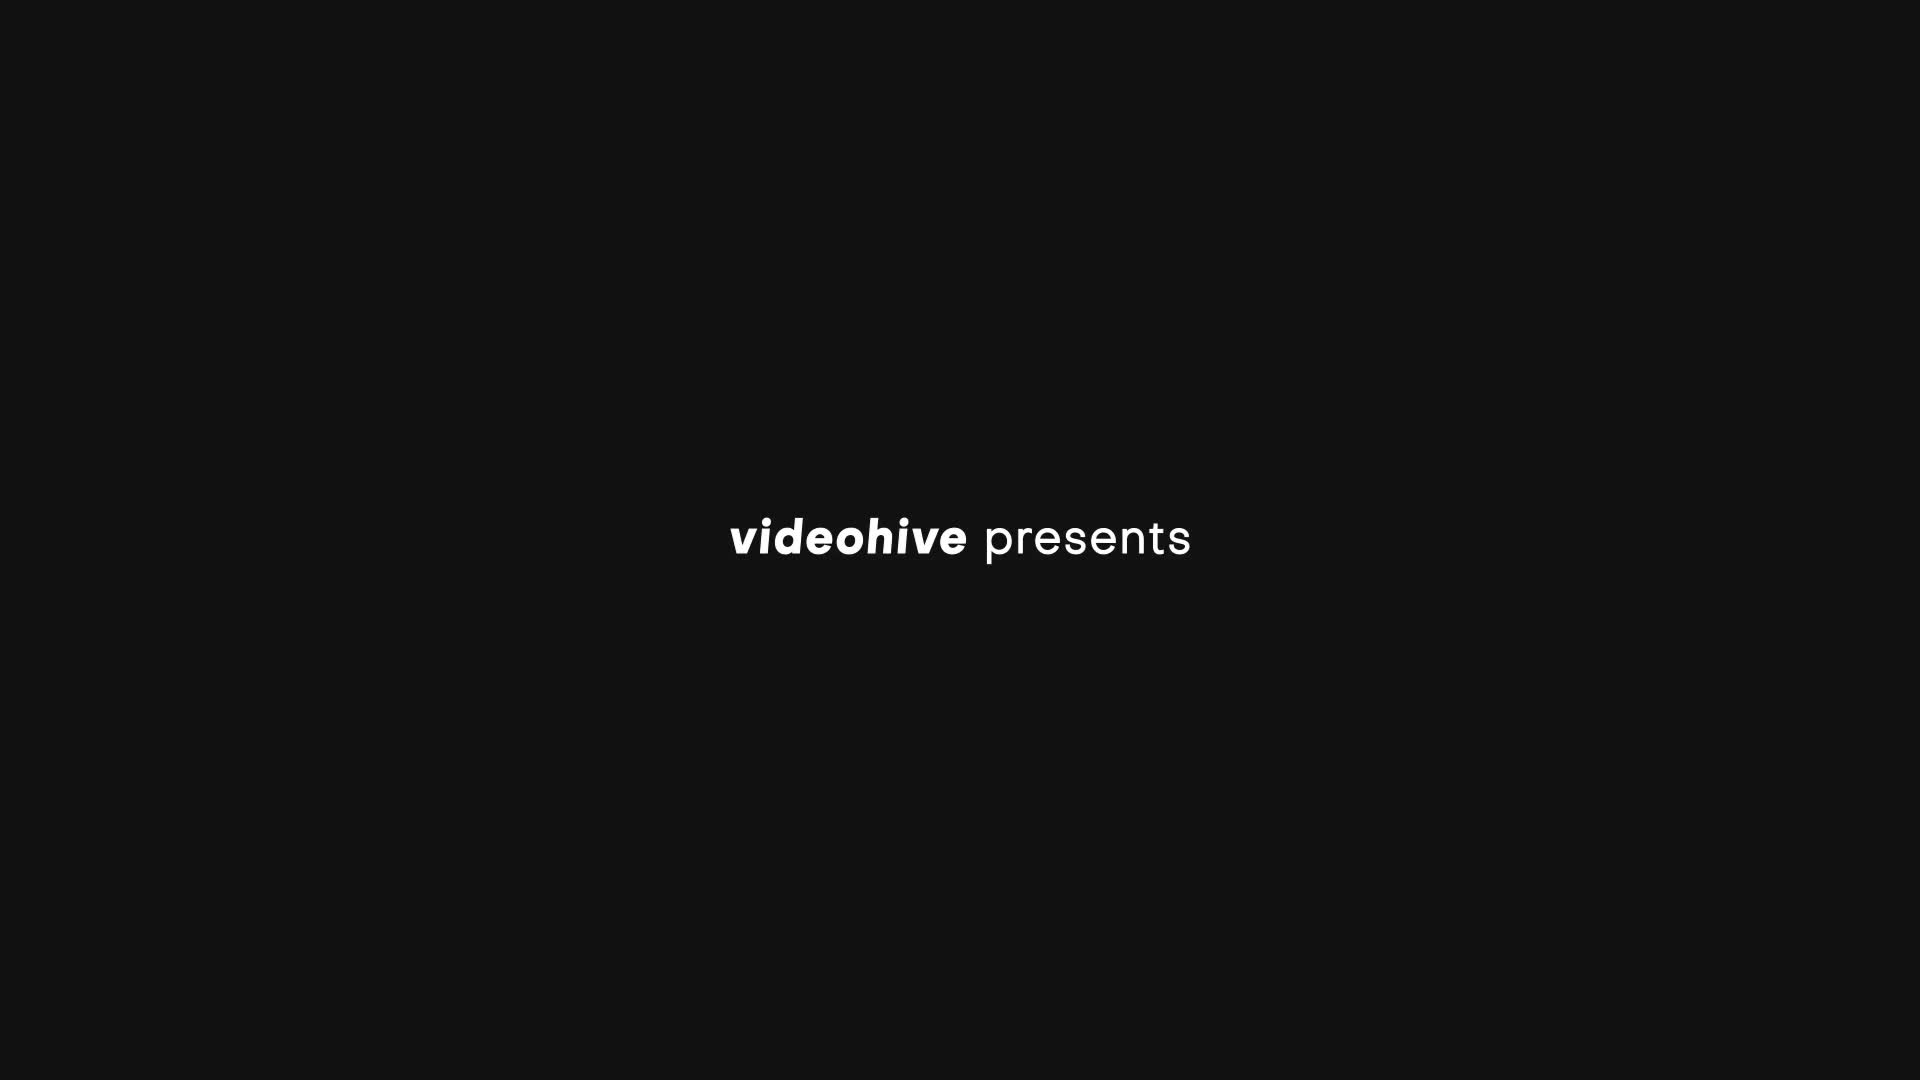 Minimal Promo Slideshow 6 | Premiere Pro Videohive 36517385 Premiere Pro Image 1